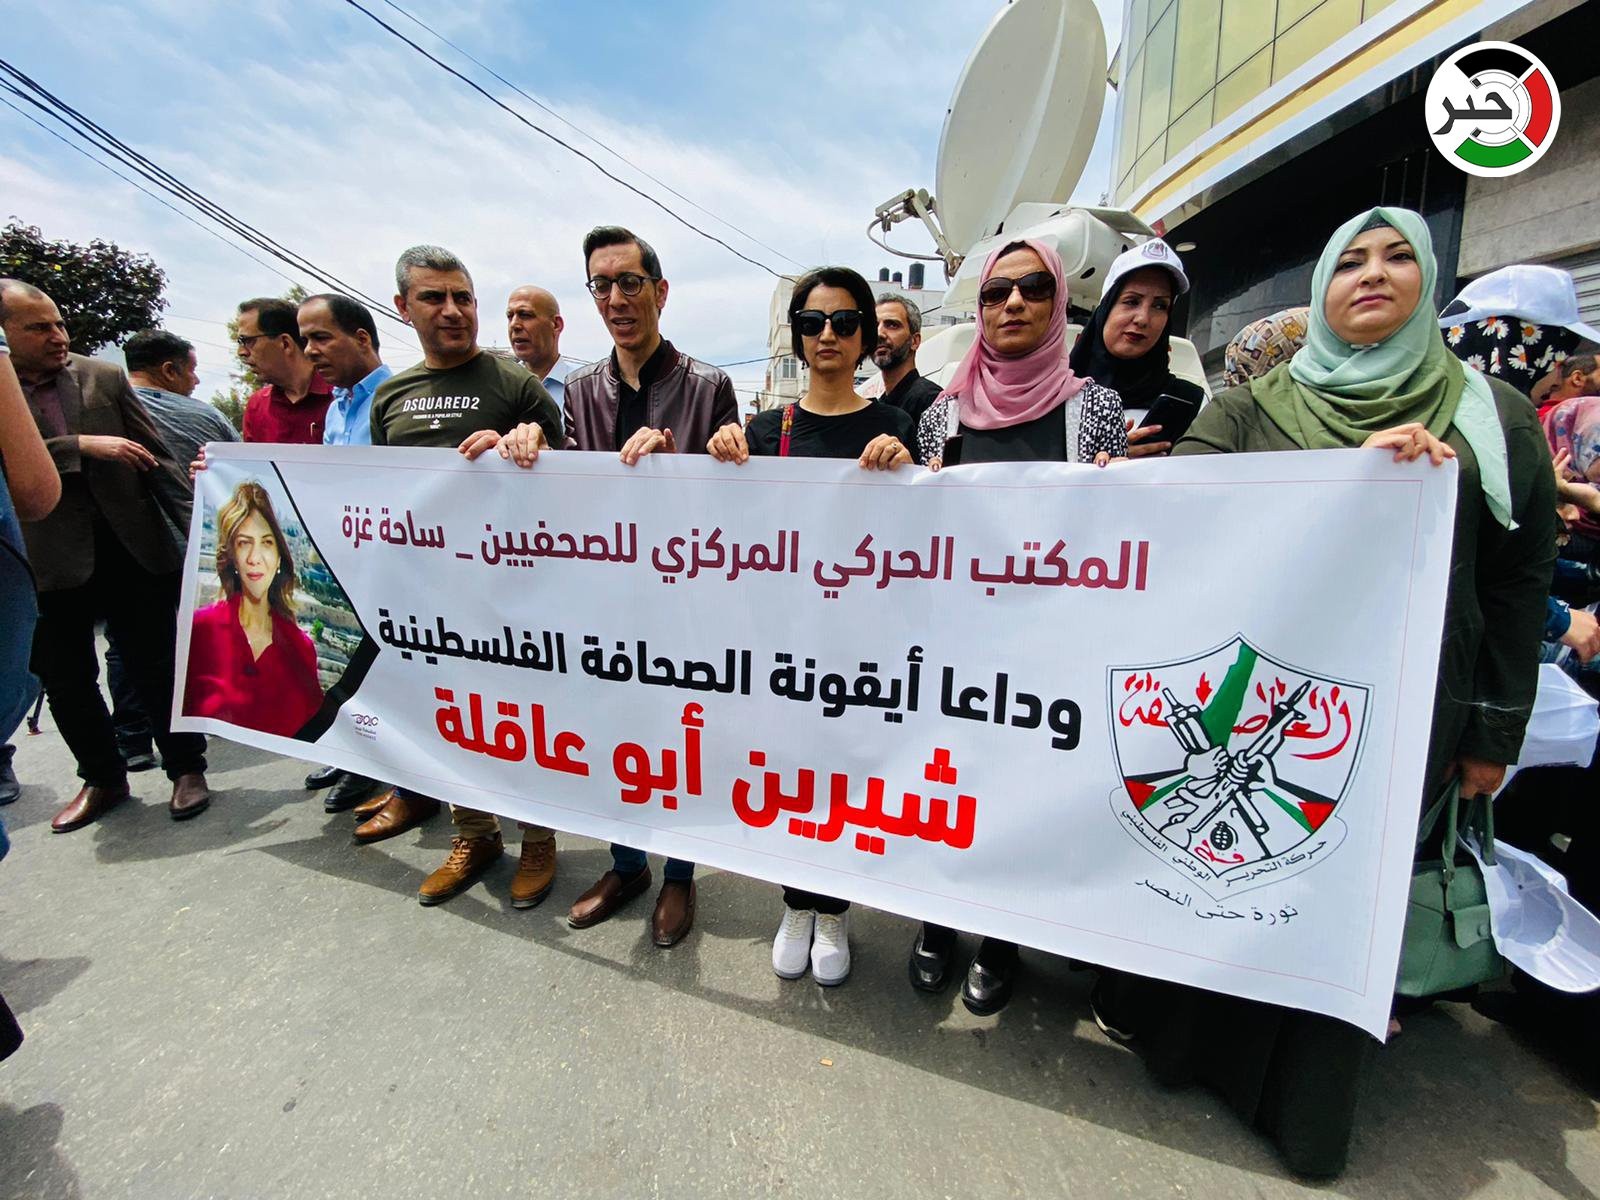 تيار الإصلاح الديمقراطي يُشارك في وقفة احتجاجية رافضة لجريمة اغتيال الصحفية شيرين أبو عاقلة